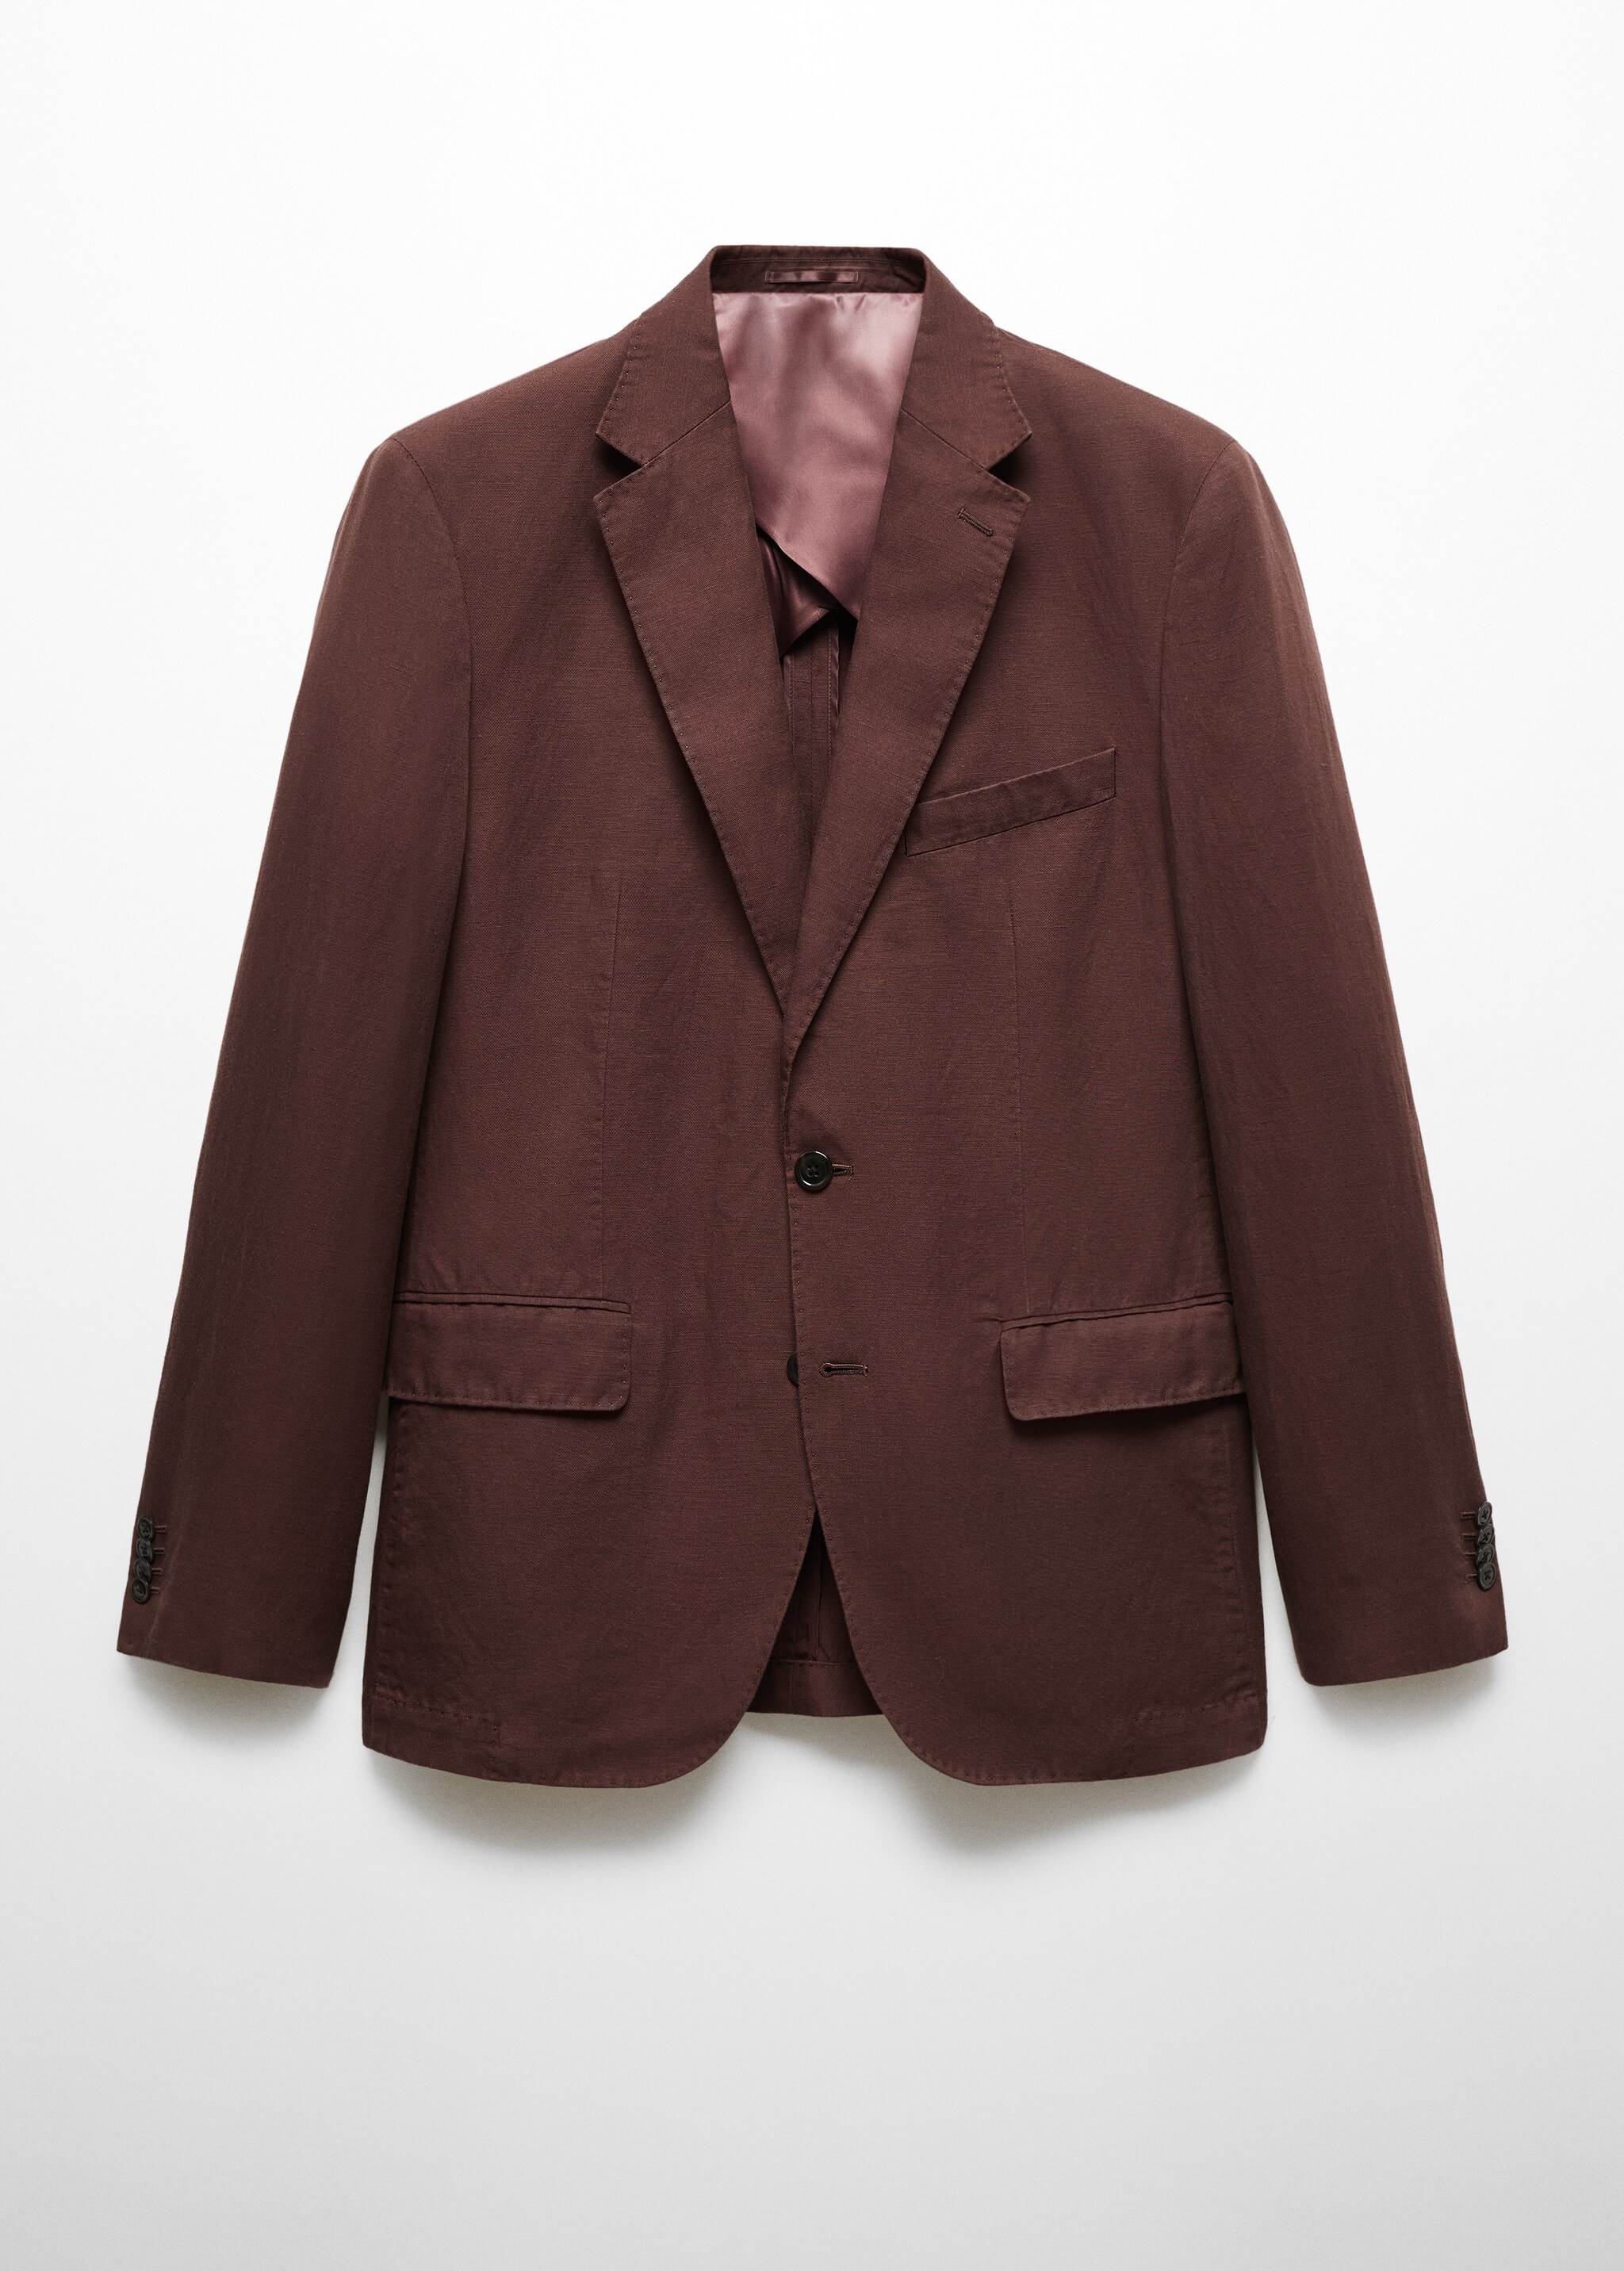 Slim fit linen suit blazer - Article without model